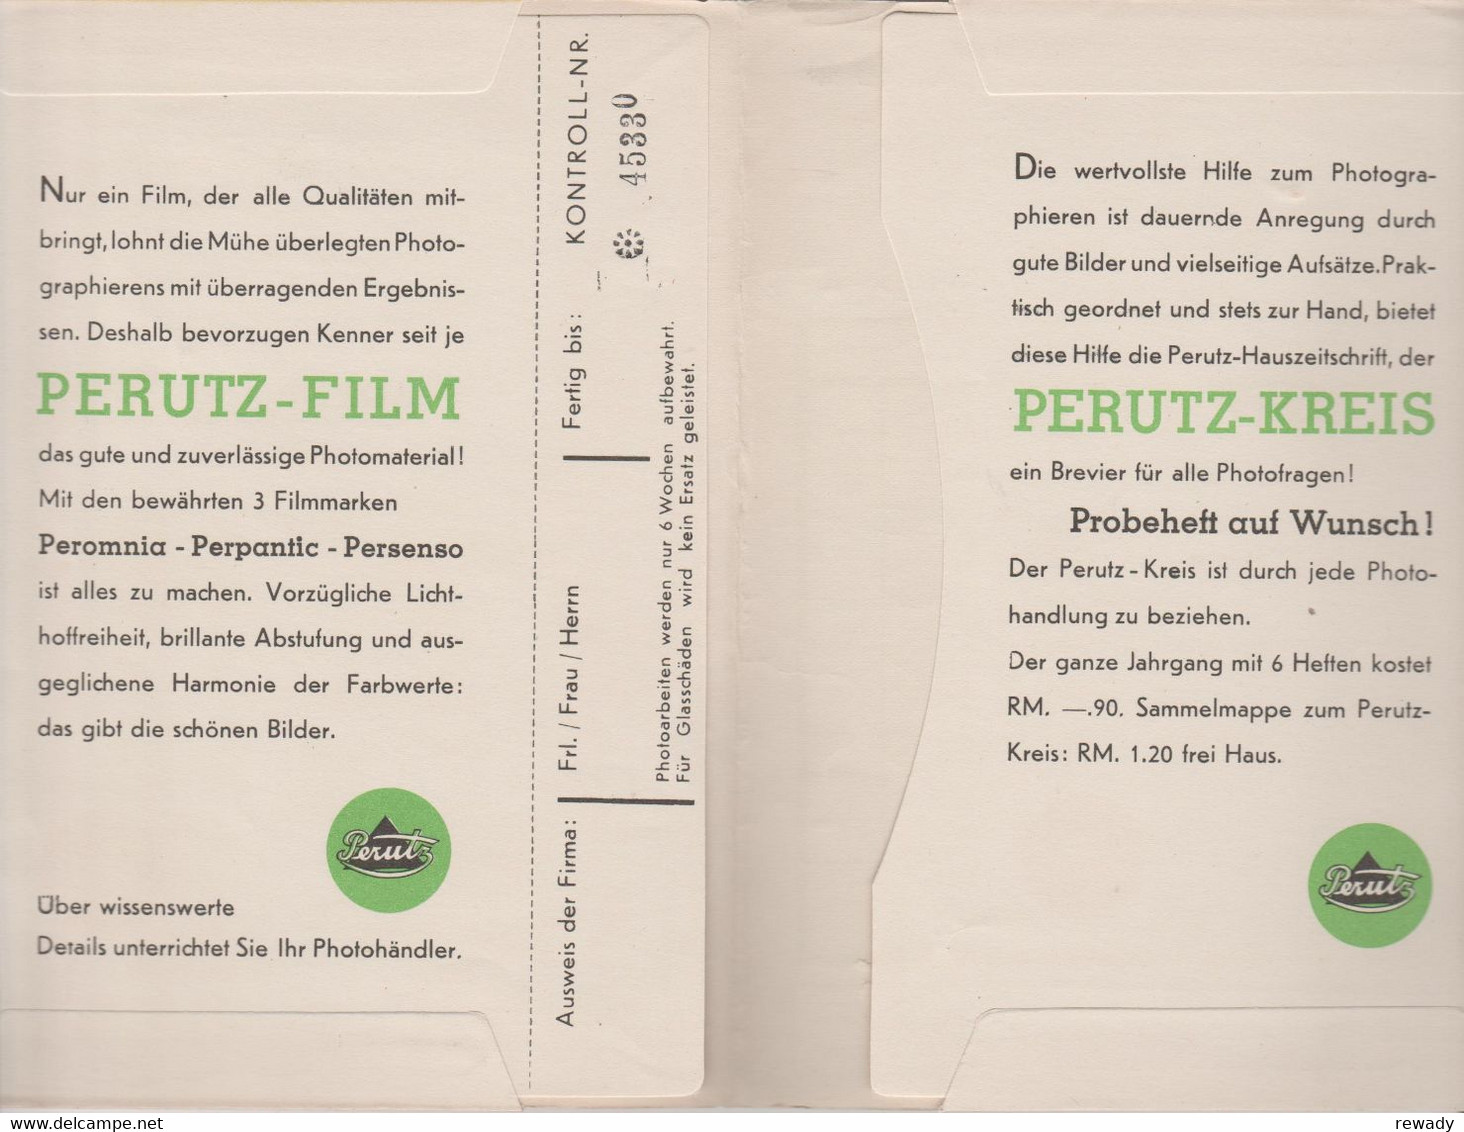 Perutz Film - Heinrich Hruban - Wien - Photo Paper Envelope - Advertising - Publicité - Matériel & Accessoires